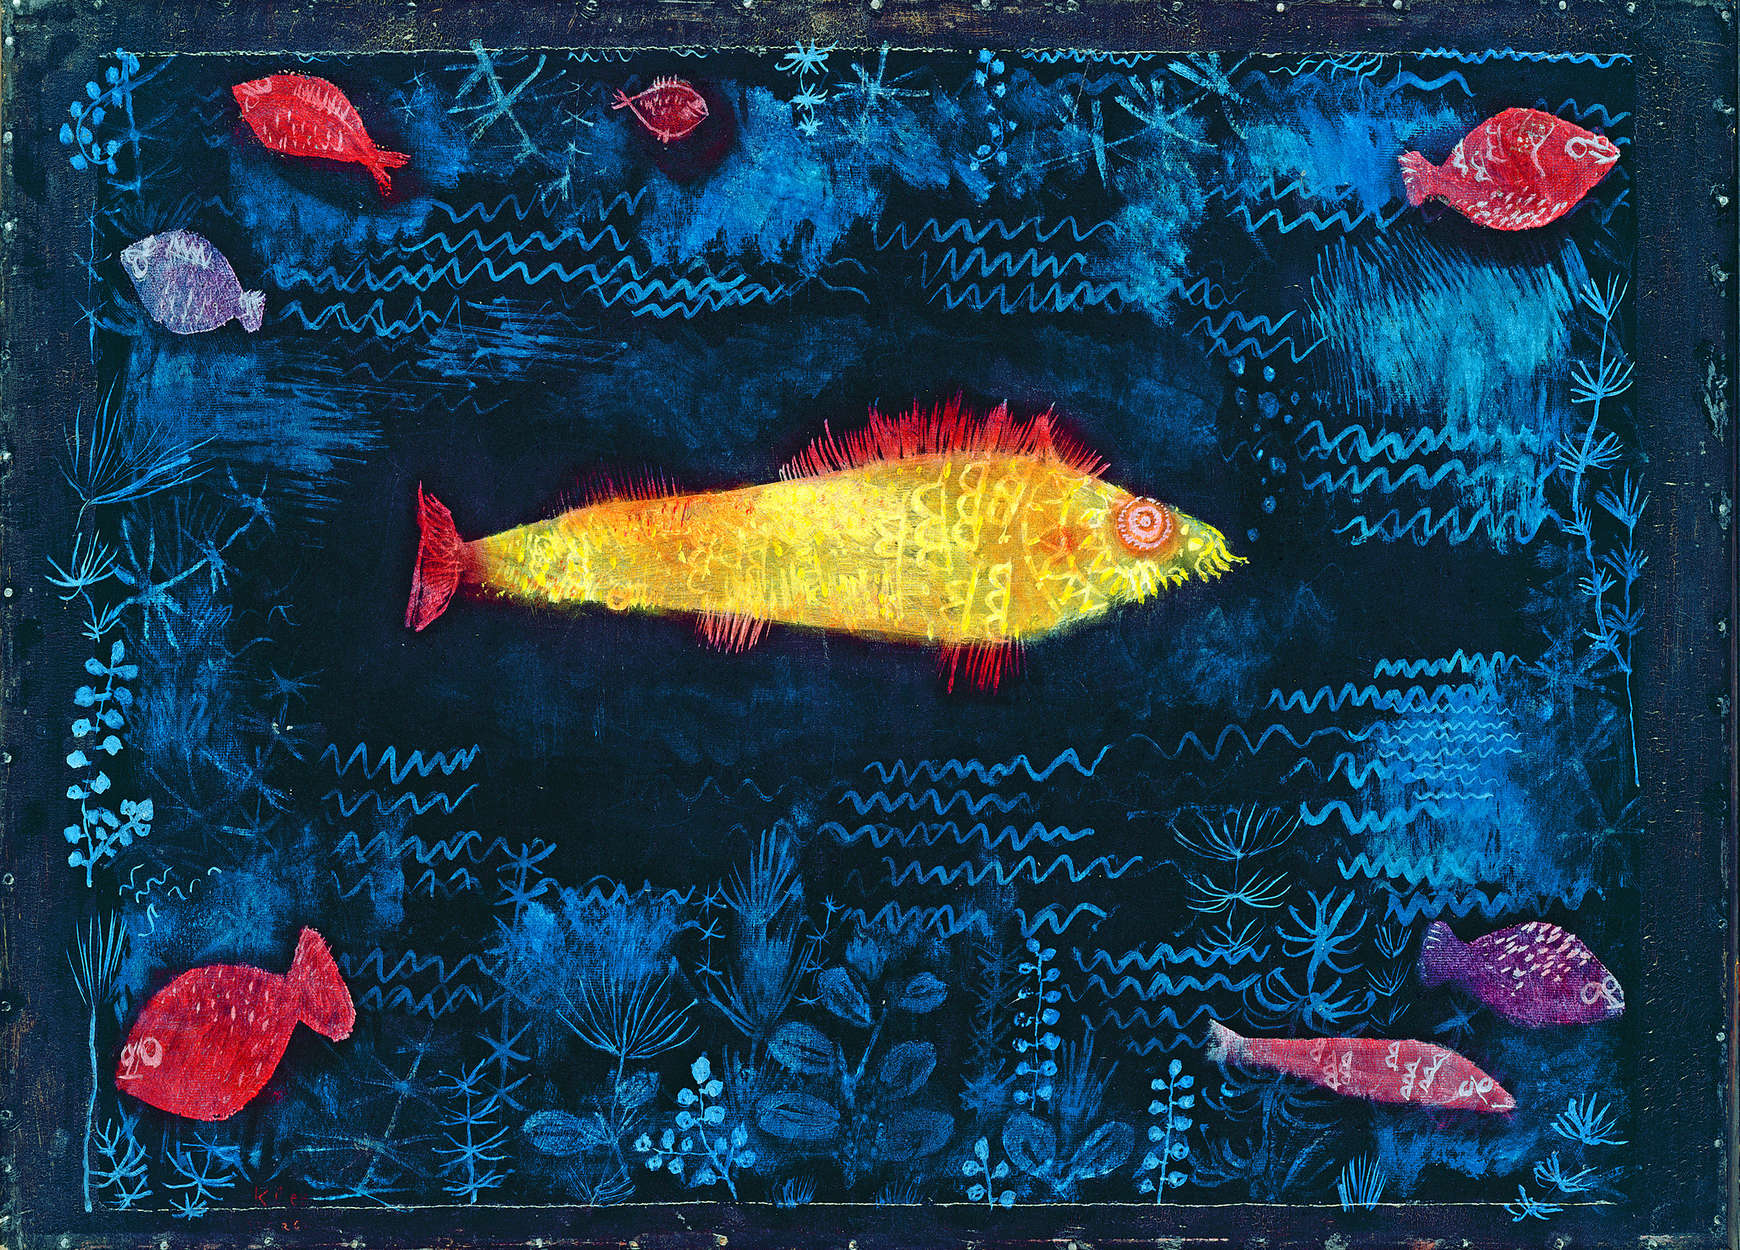             Papier peint panoramique "Le poisson rouge" de Paul Klee
        